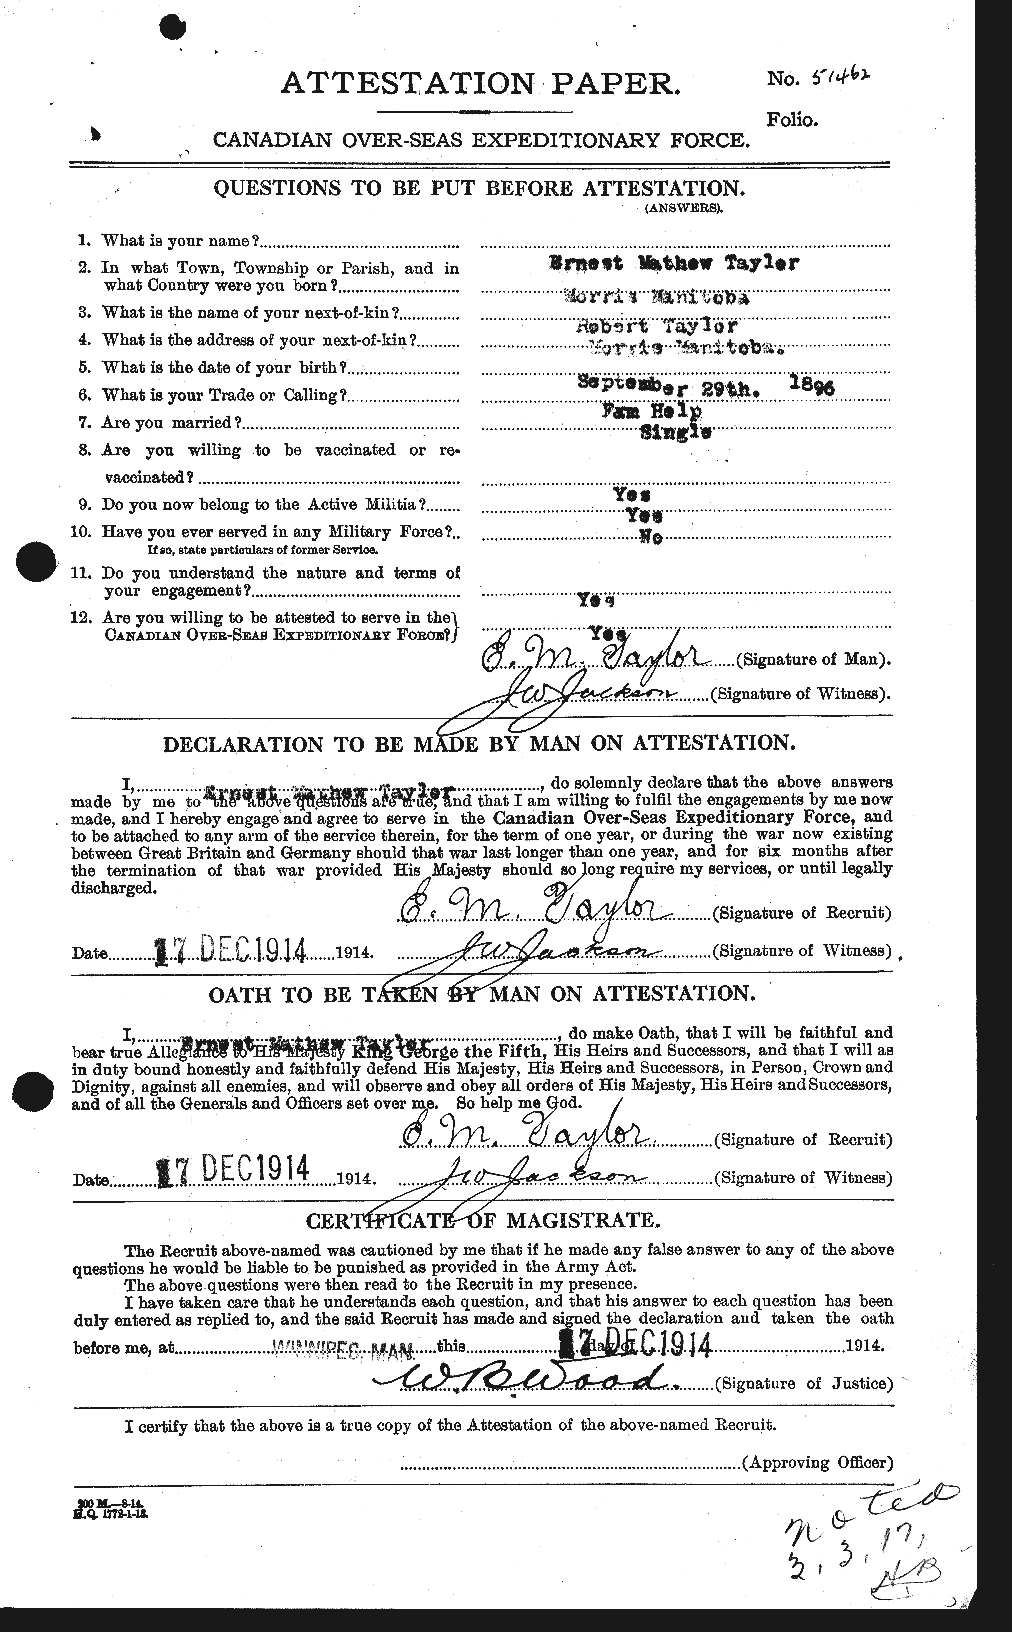 Dossiers du Personnel de la Première Guerre mondiale - CEC 627400a